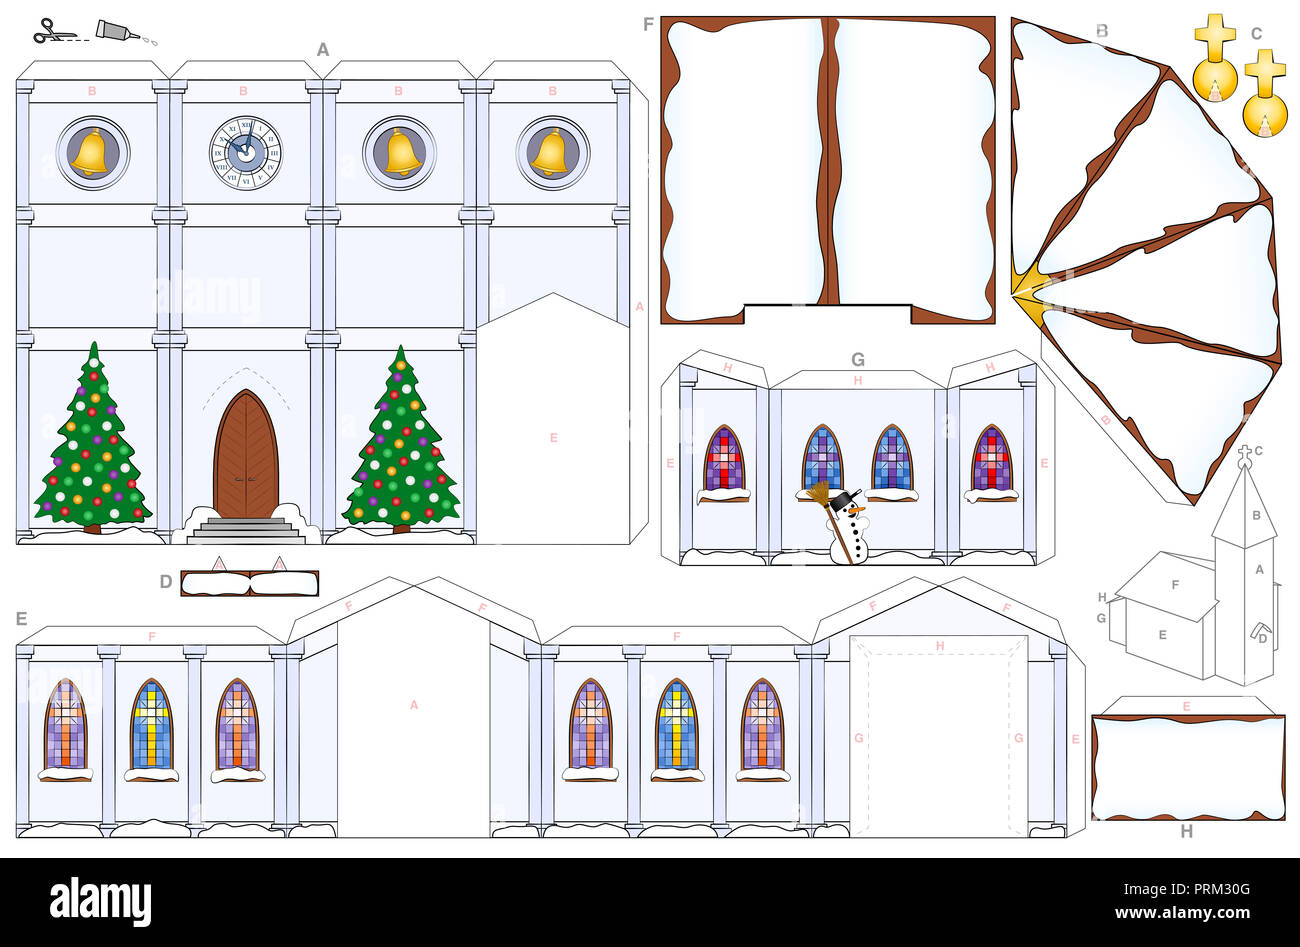 Chiesa in inverno, carta artigianale foglio. Foglio ritagliato di per effettuare una dettagliata 3d modello in scala chiesa con neve tetti, alberi di natale e pupazzi di neve. Foto Stock